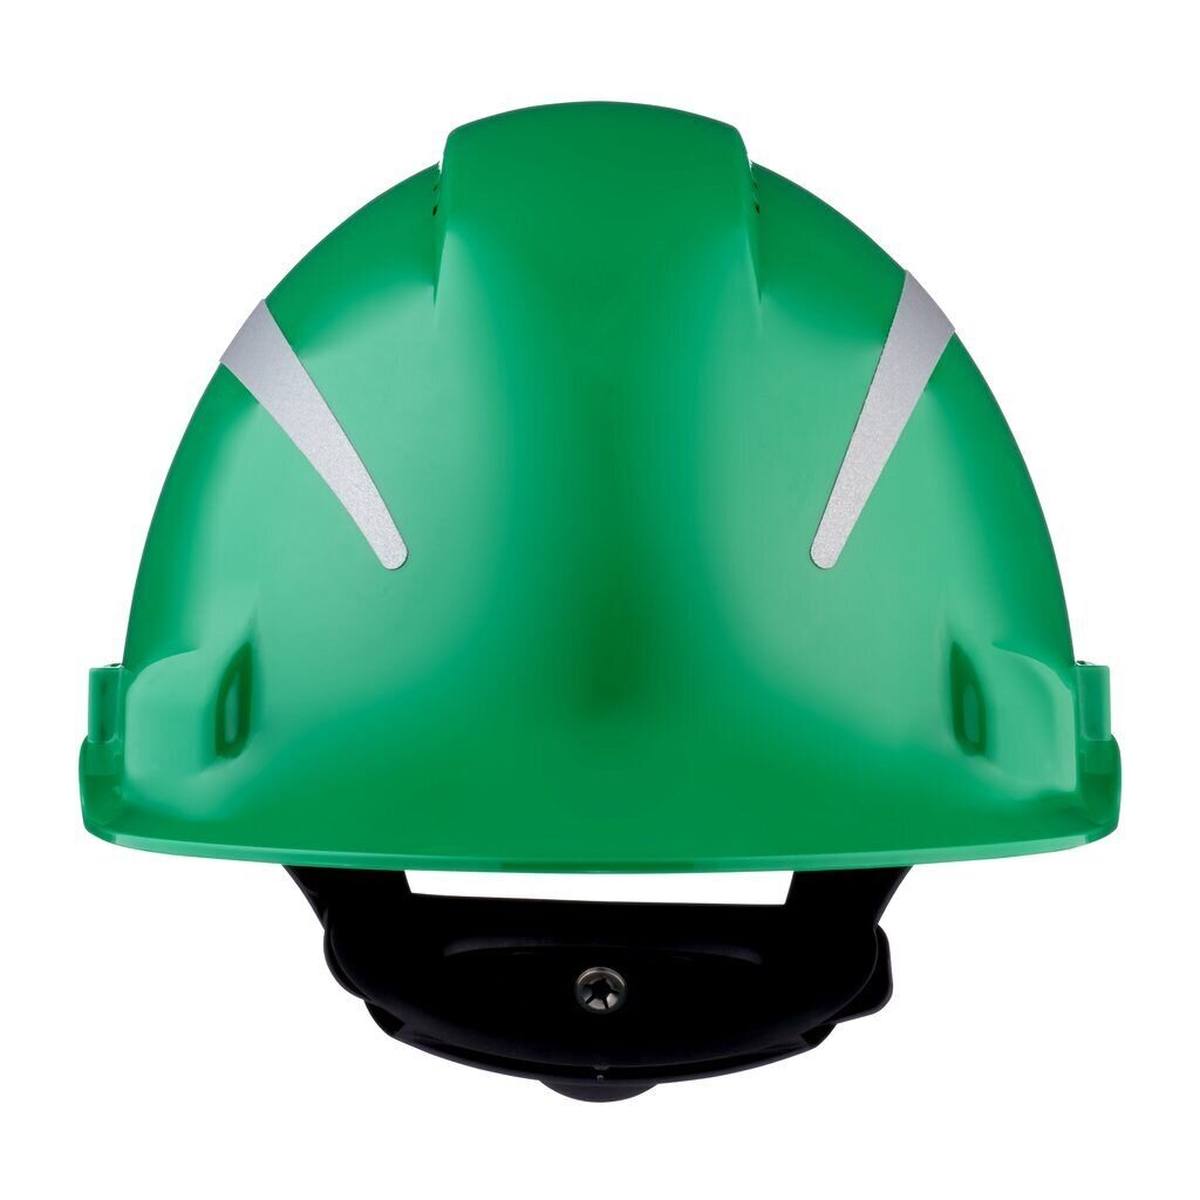 elmetto di sicurezza 3M G3000 con indicatore UV, verde, ABS, chiusura a cricchetto ventilata, fascia antisudore in plastica, adesivo riflettente